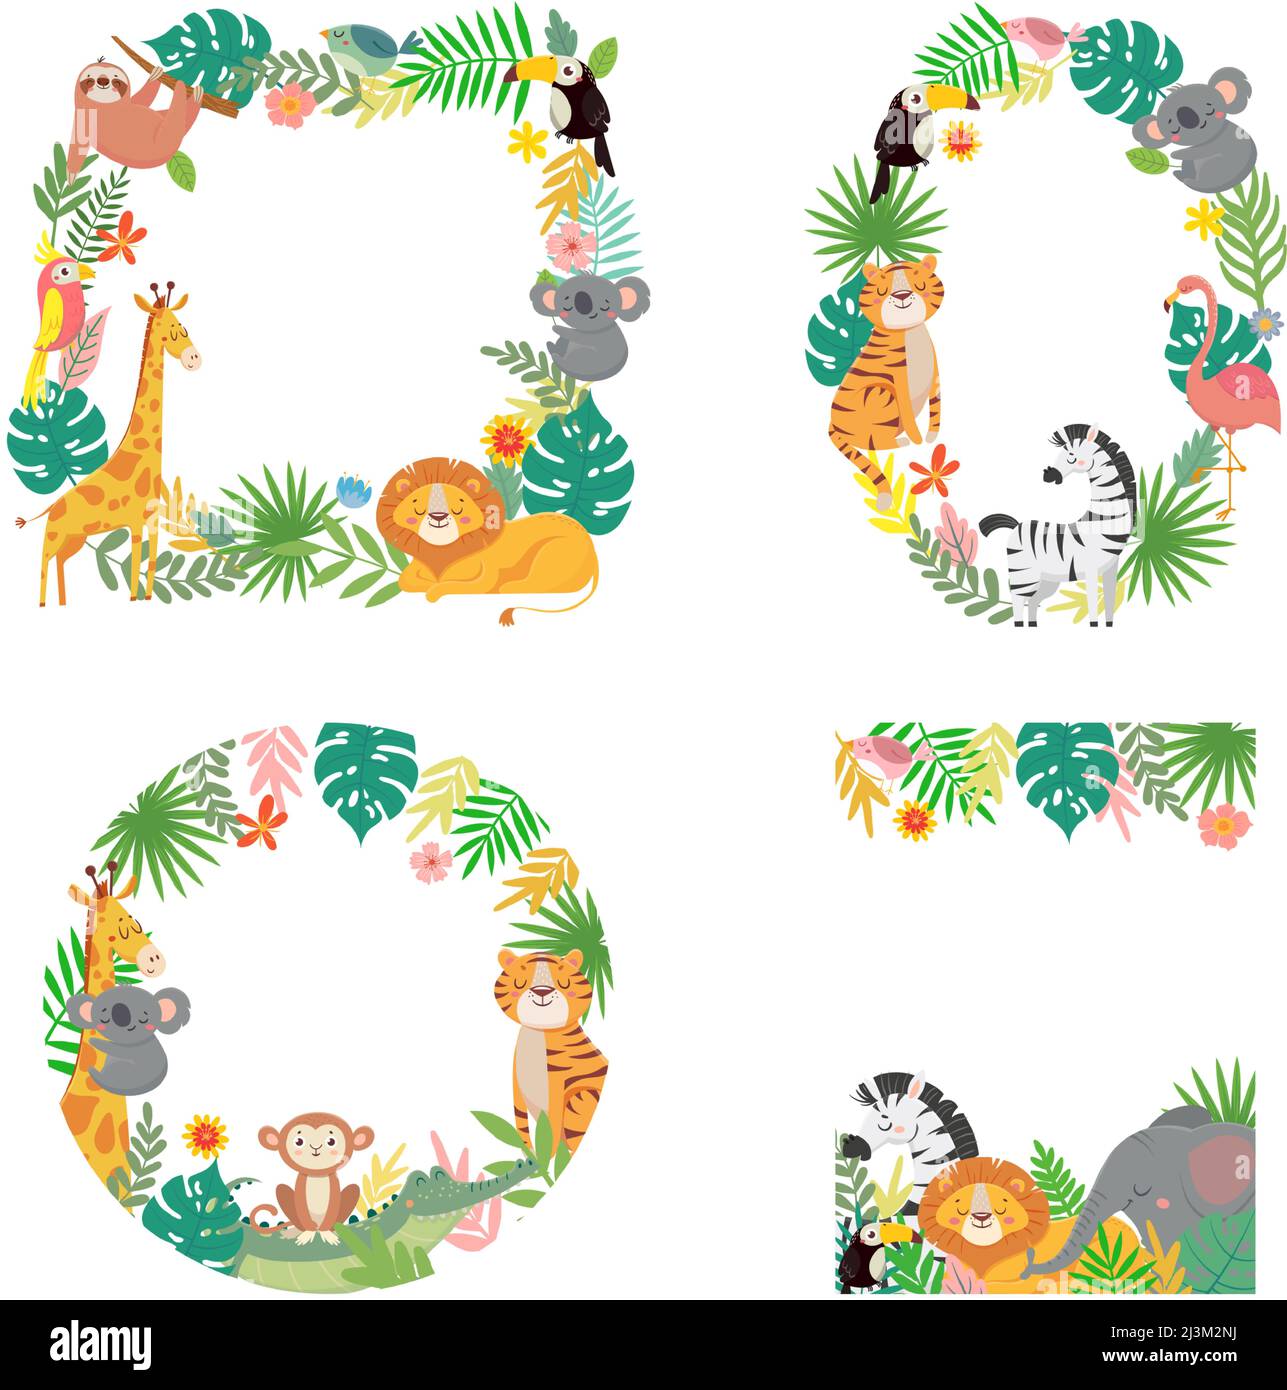 Cadre animaux de dessin animé. Feuilles de palmier tropicales vertes avec tigre, lion, girafe, koala et éléphants bordés Illustration de Vecteur